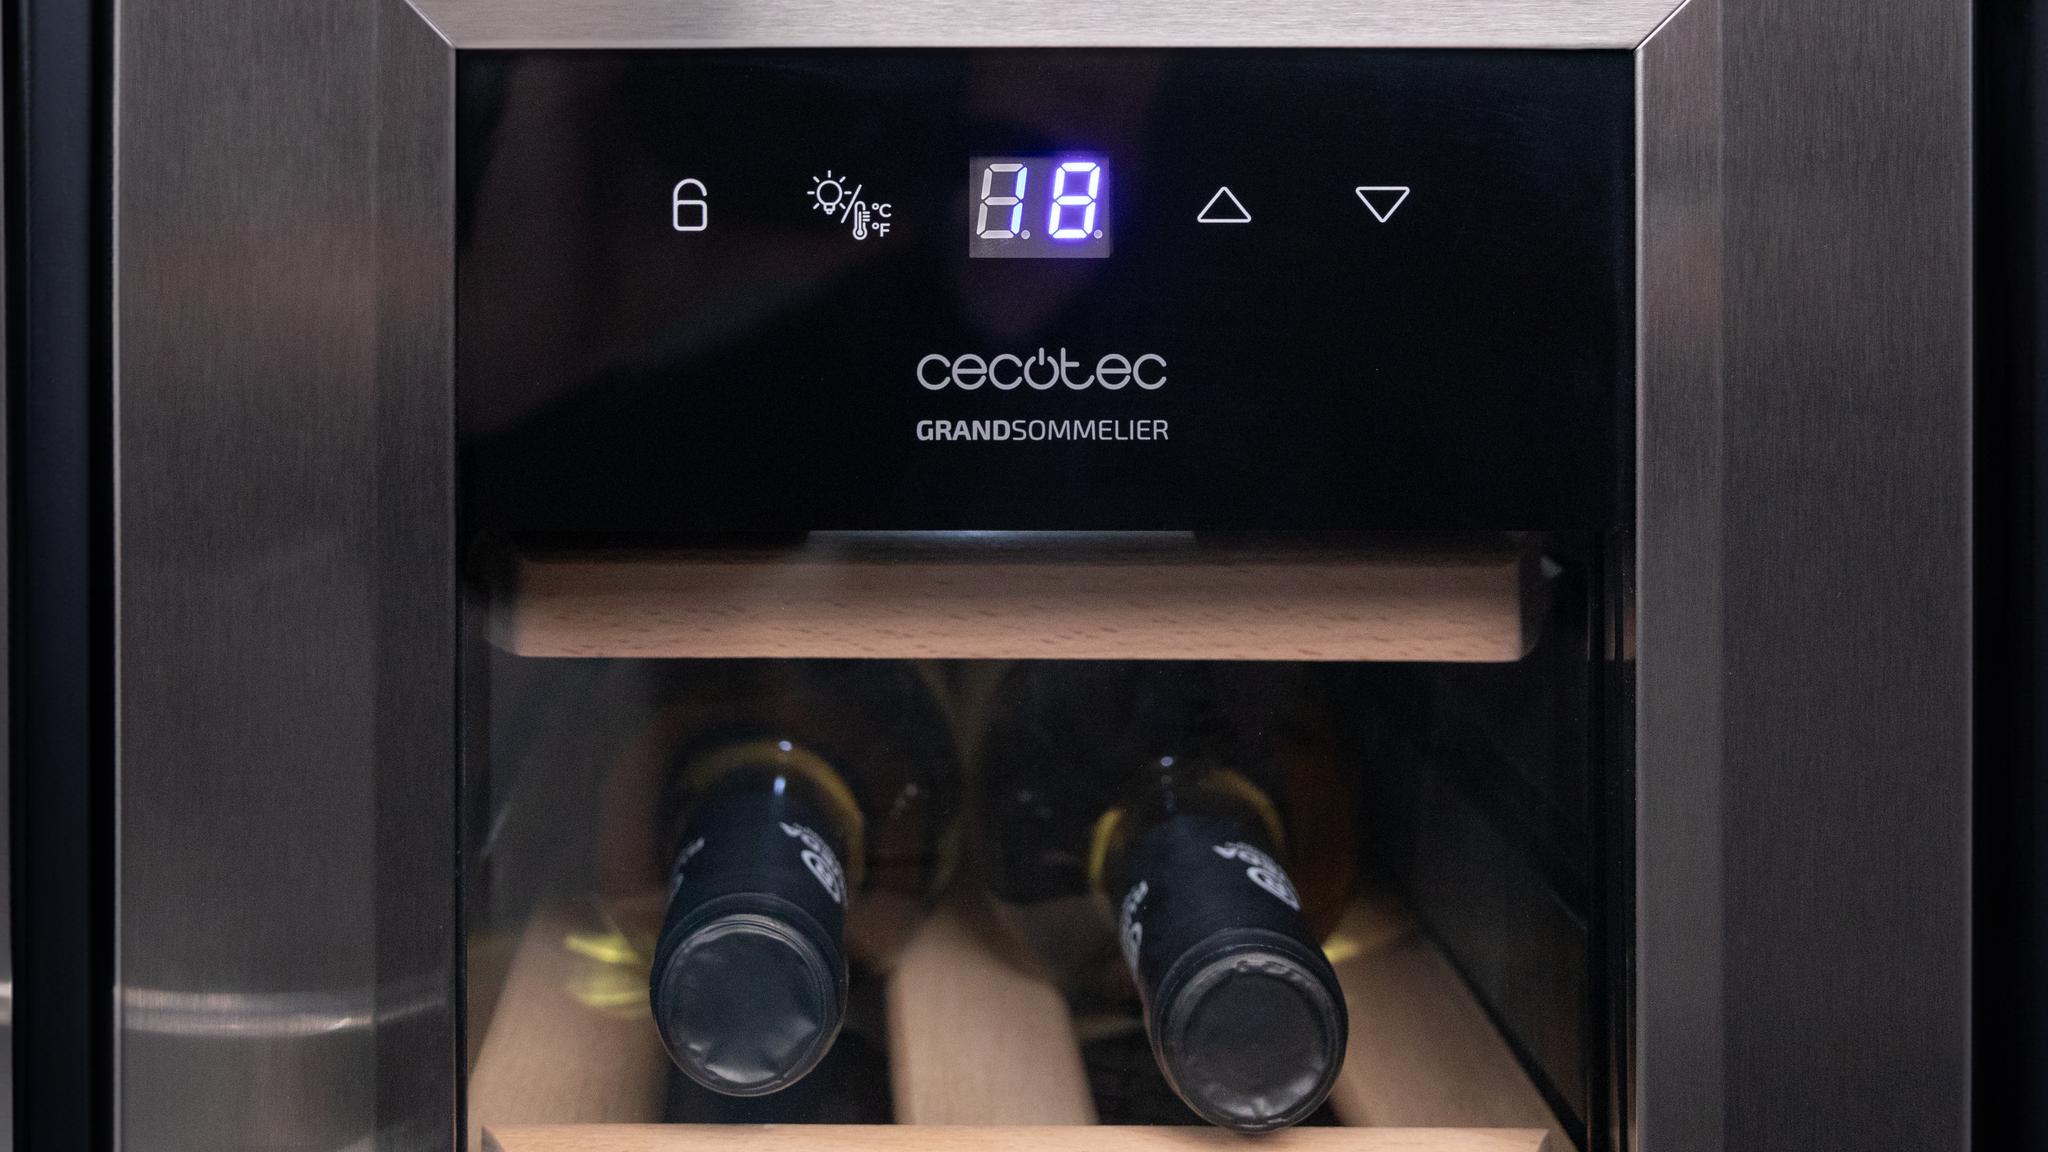 Cecotec Vinoteca 12 Botellas Bolero Grandsommelier 1230 Coolwood,  Termoeléctrica, Bajo nivel sonoro y alto rendimiento, Temperatura  regulable: 8-18ºC